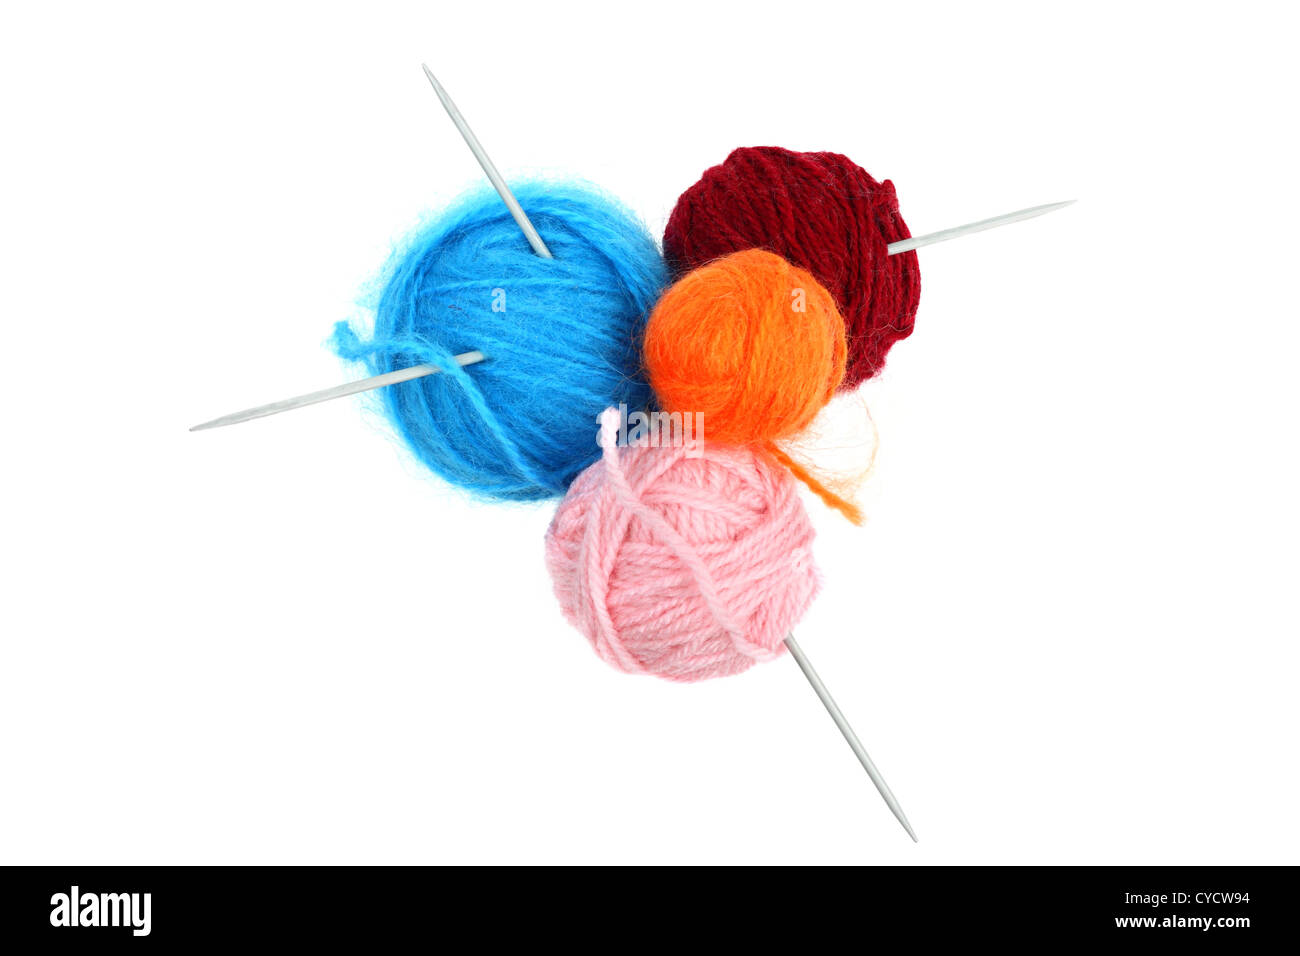 Boules de fil de laine colorés avec des aiguilles à tricoter isolated on white Banque D'Images